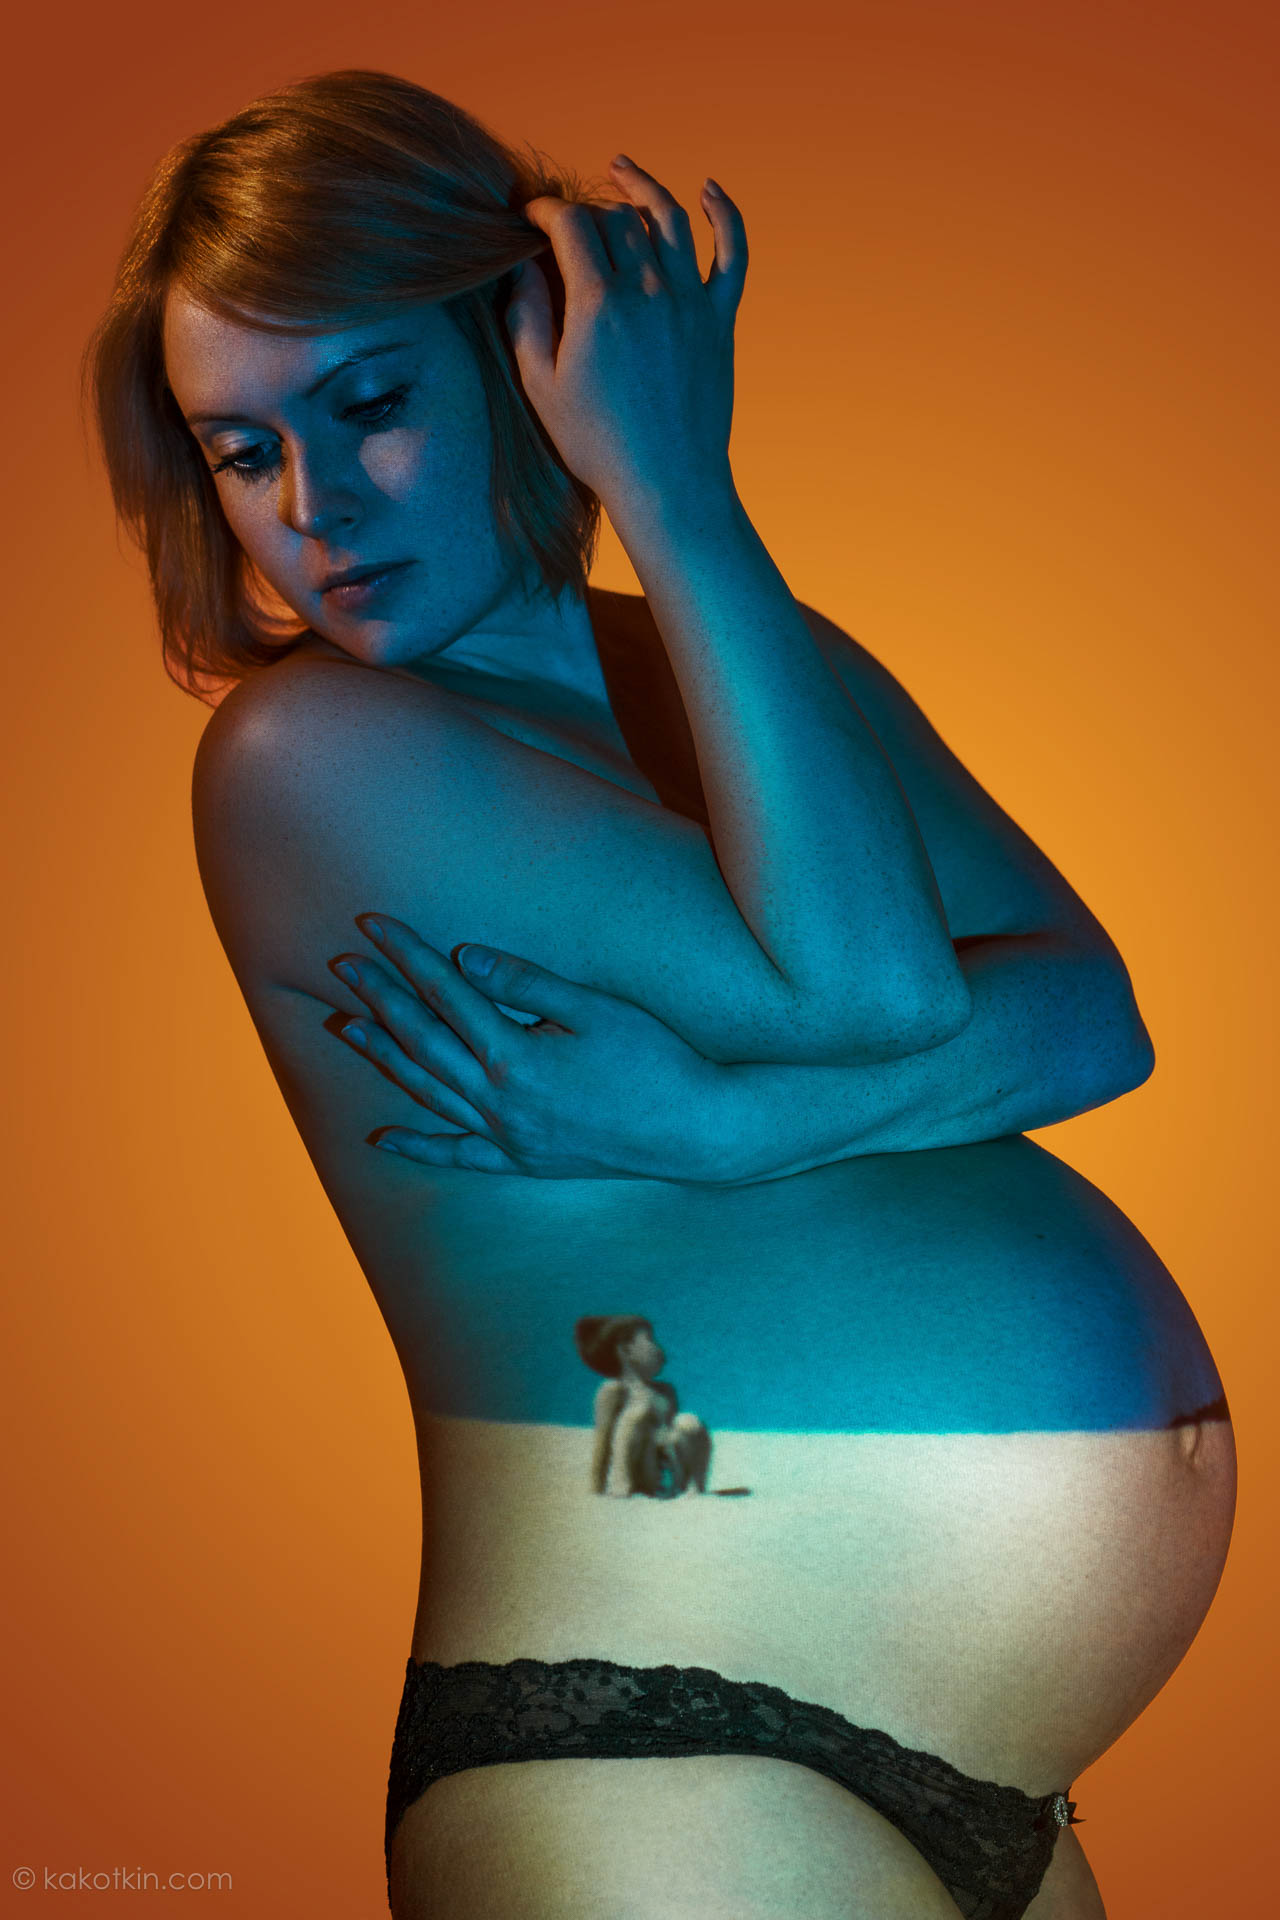 Детская и семейная фотосессия, во время беременности в Москве, профессиональный фотограф Роман Какоткин